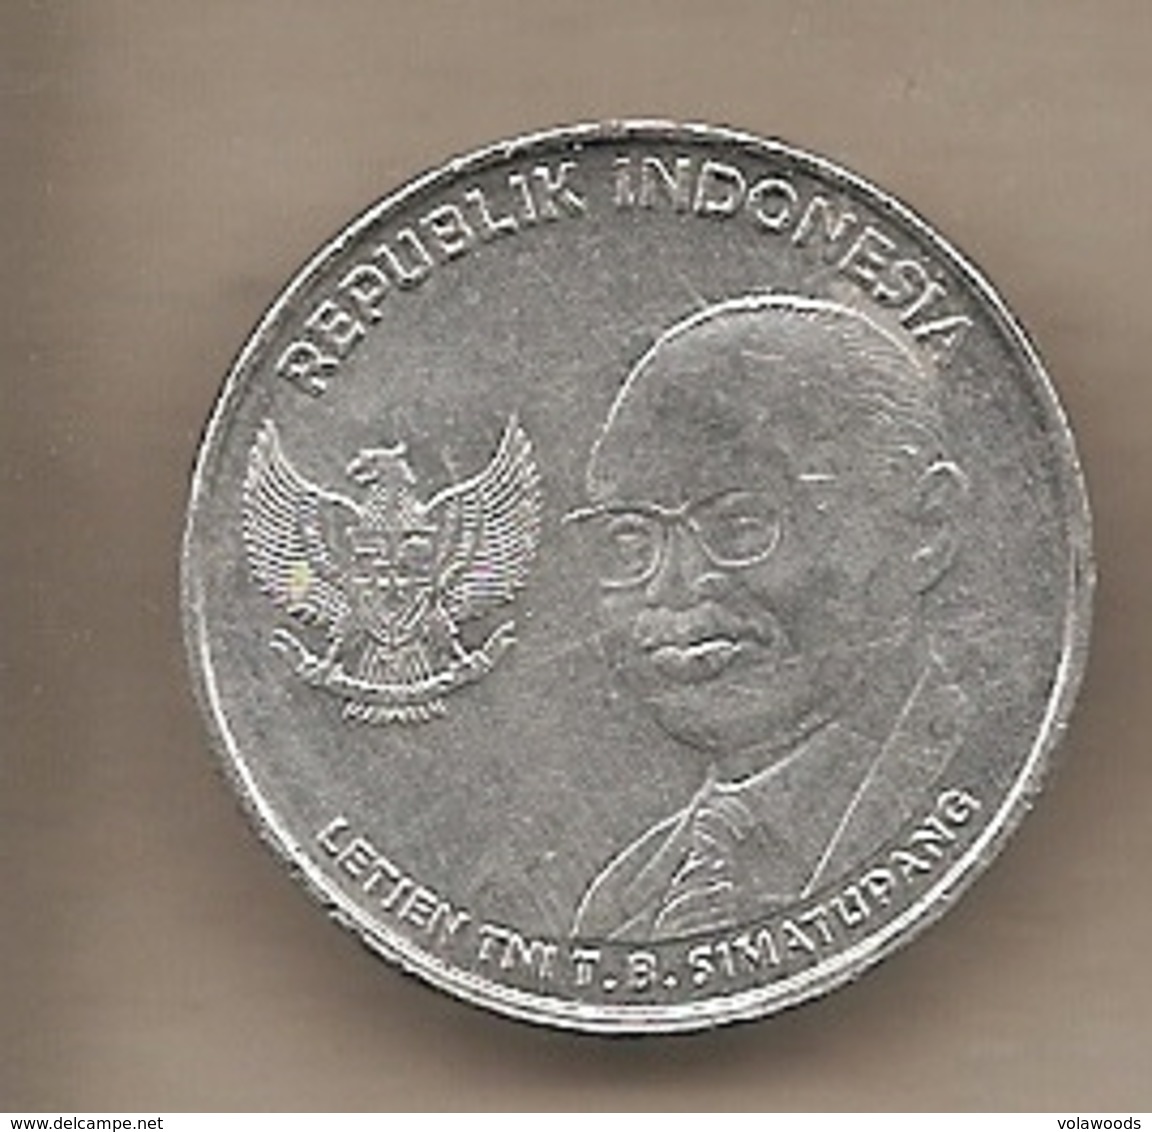 Indonesia - Moneta Circolata Da 500 Rupie - 2016 - Indonesia